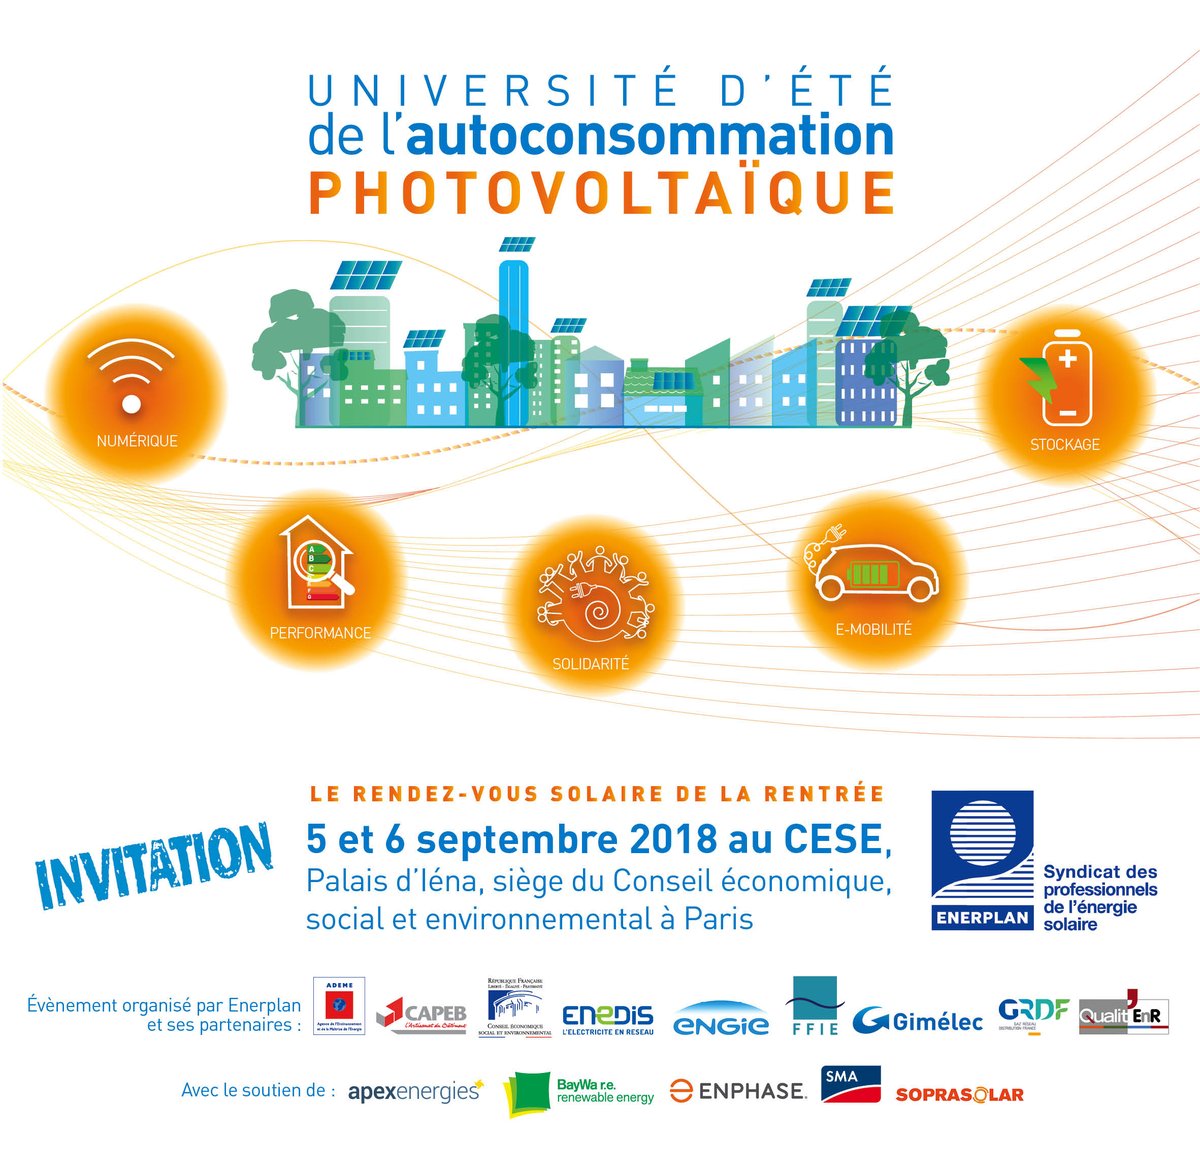 #UniversitédEté #AutoconsoPV Atelier 'Le #photovoltaïque en soutien à l'électromobilité': nous vous réservons un panel de 1er choix, a/ @nissanfrance, @ileahu de @DRIV_ECO, @vschachter d'@eMotorWerks, @yannick_perez de @Chaire_Peugeot & @AssisesIRVE 👉urlz.fr/7nLx